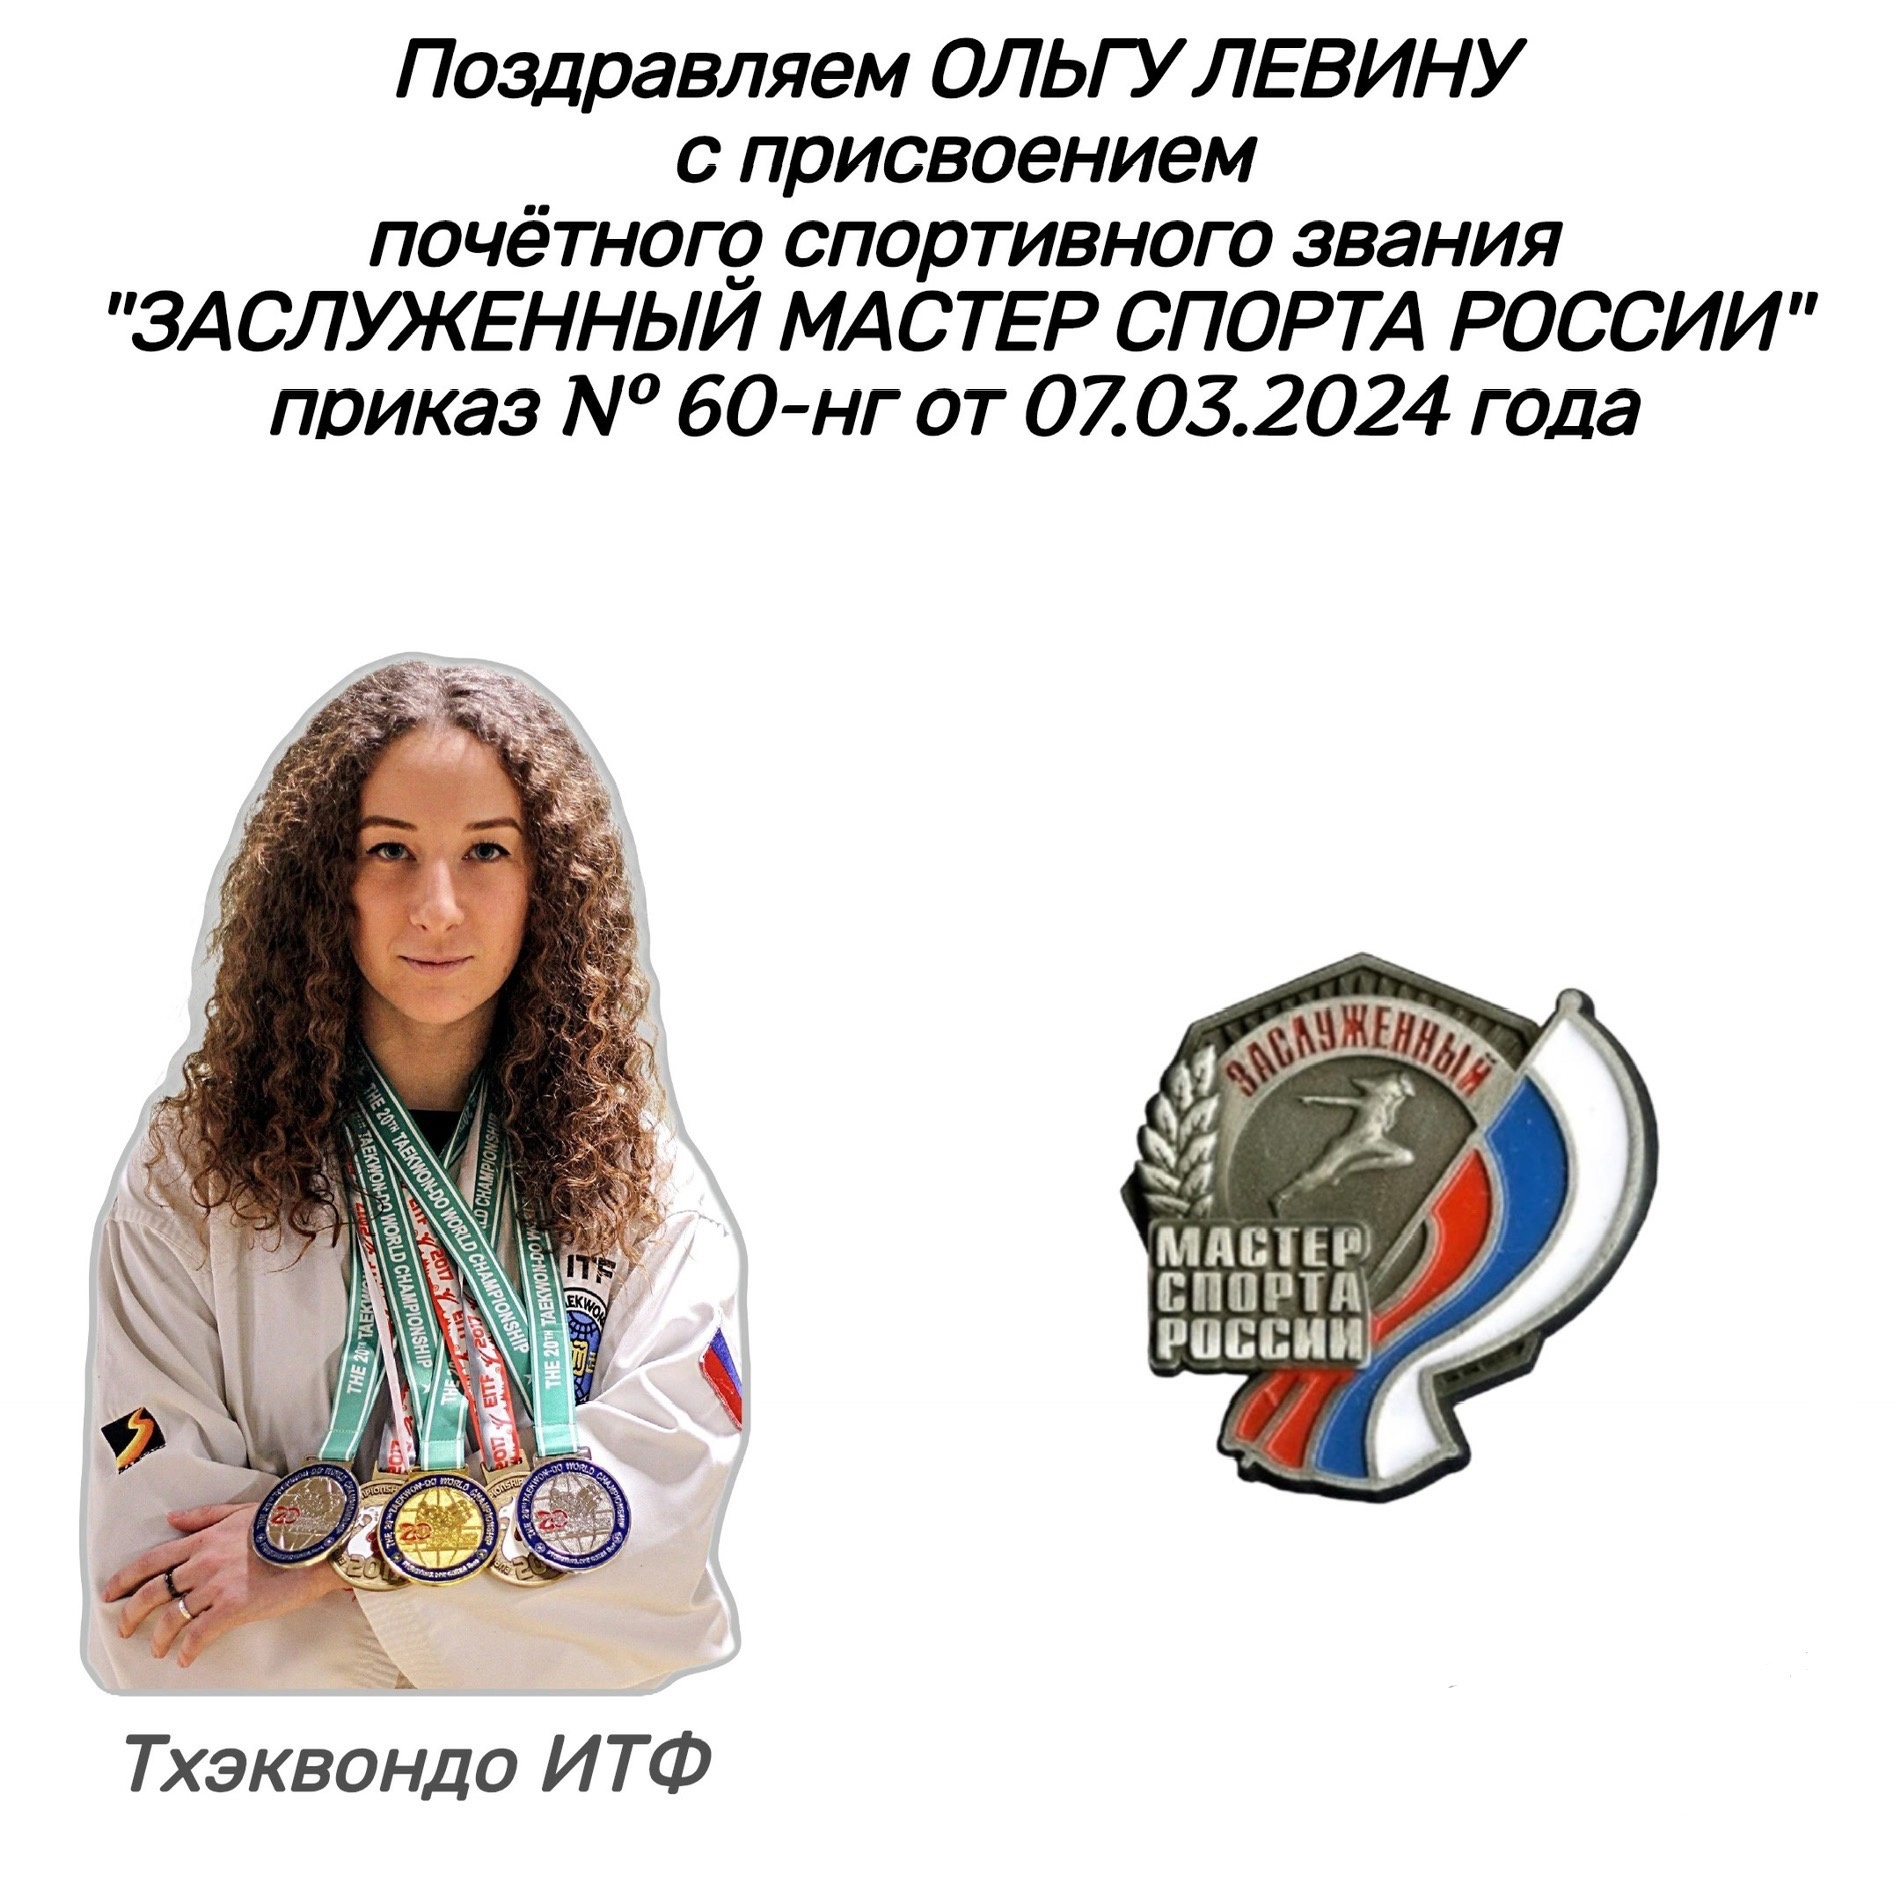 Заслуженный мастер спорта России